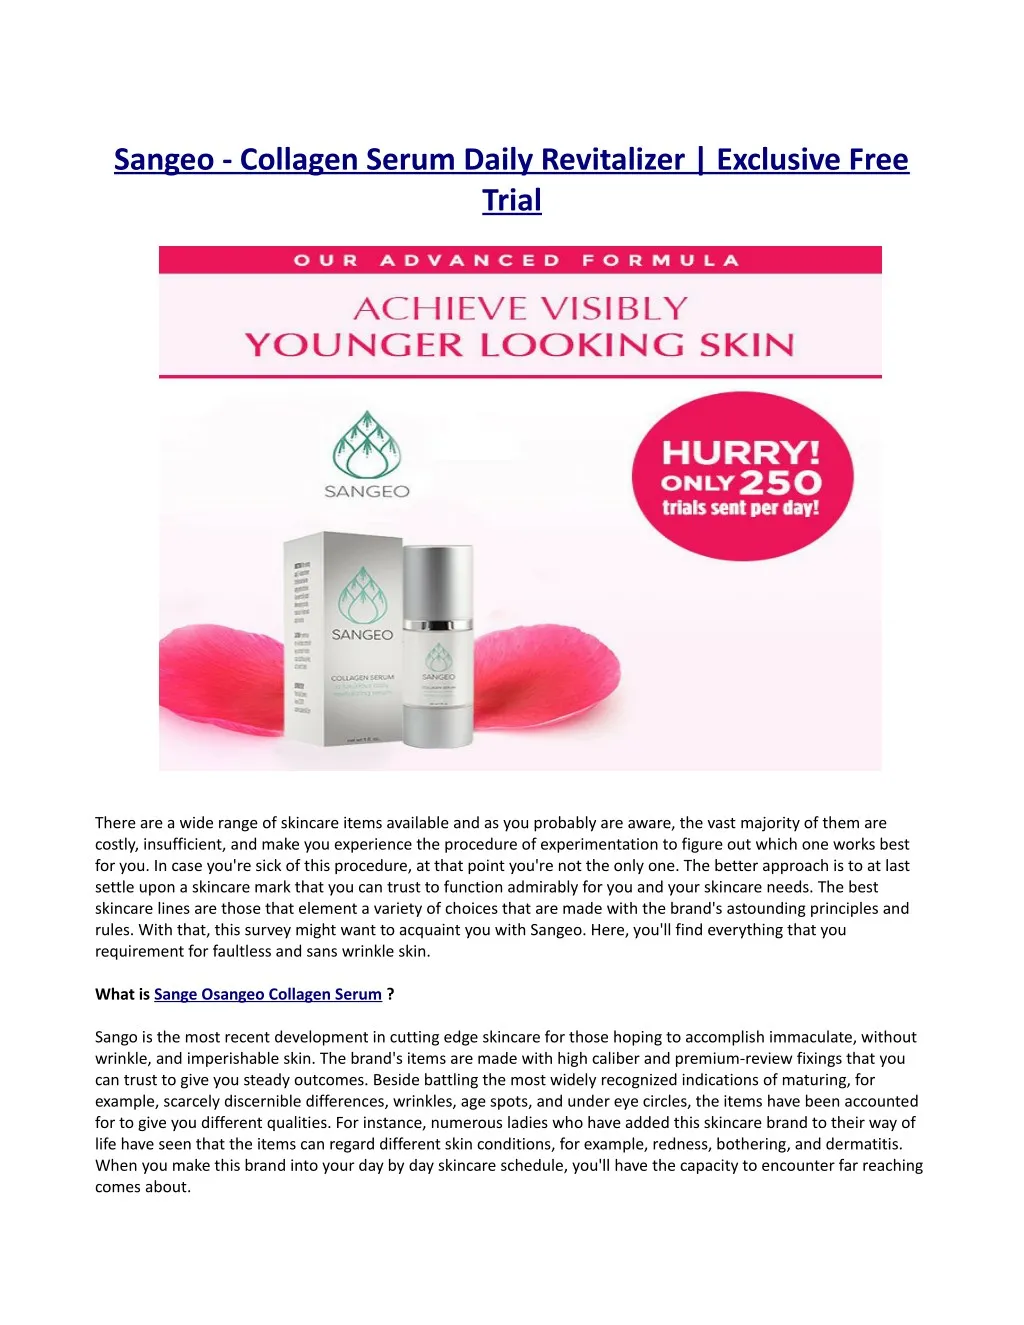 sangeo collagen serum daily revitalizer exclusive